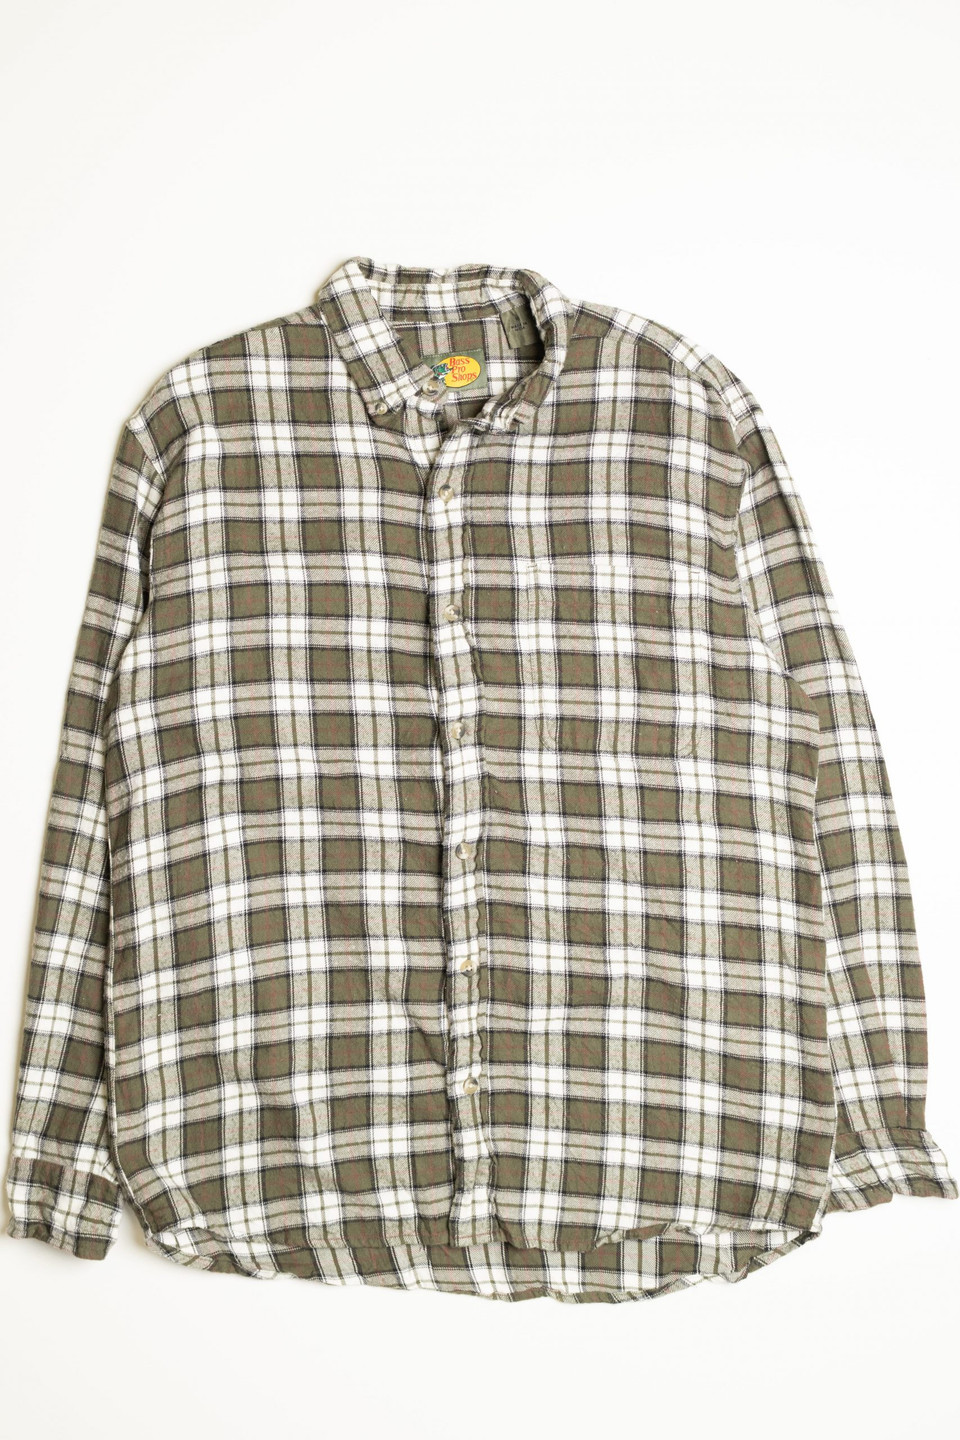 Bass Pro Shops Flannel Shirt 1 - Ragstock.com